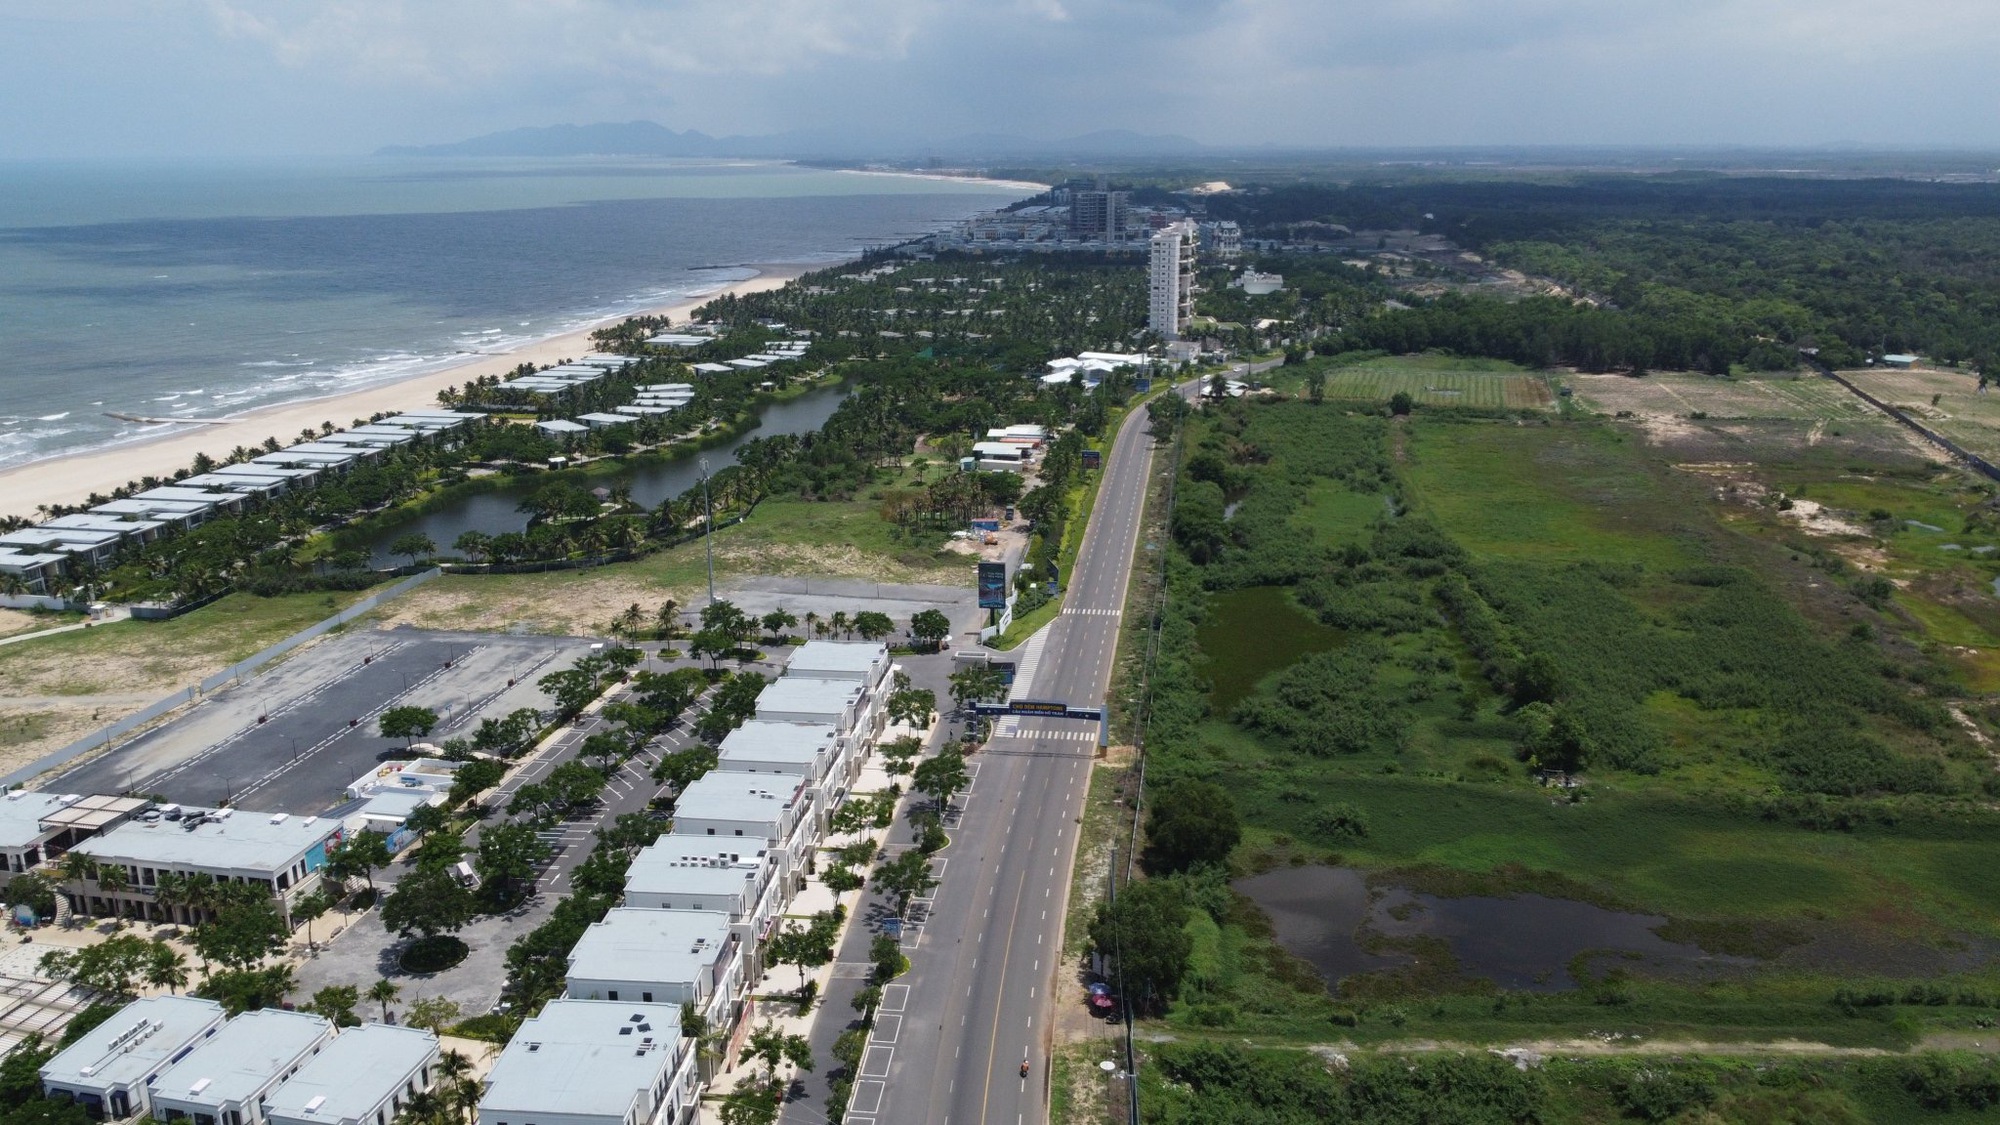 Mở rộng đường ven biển Vũng Tàu - Bình Thuận: Tạo cú hích lớn trong phát triển kinh tế, giúp kết nối liên vùng - Ảnh 6.